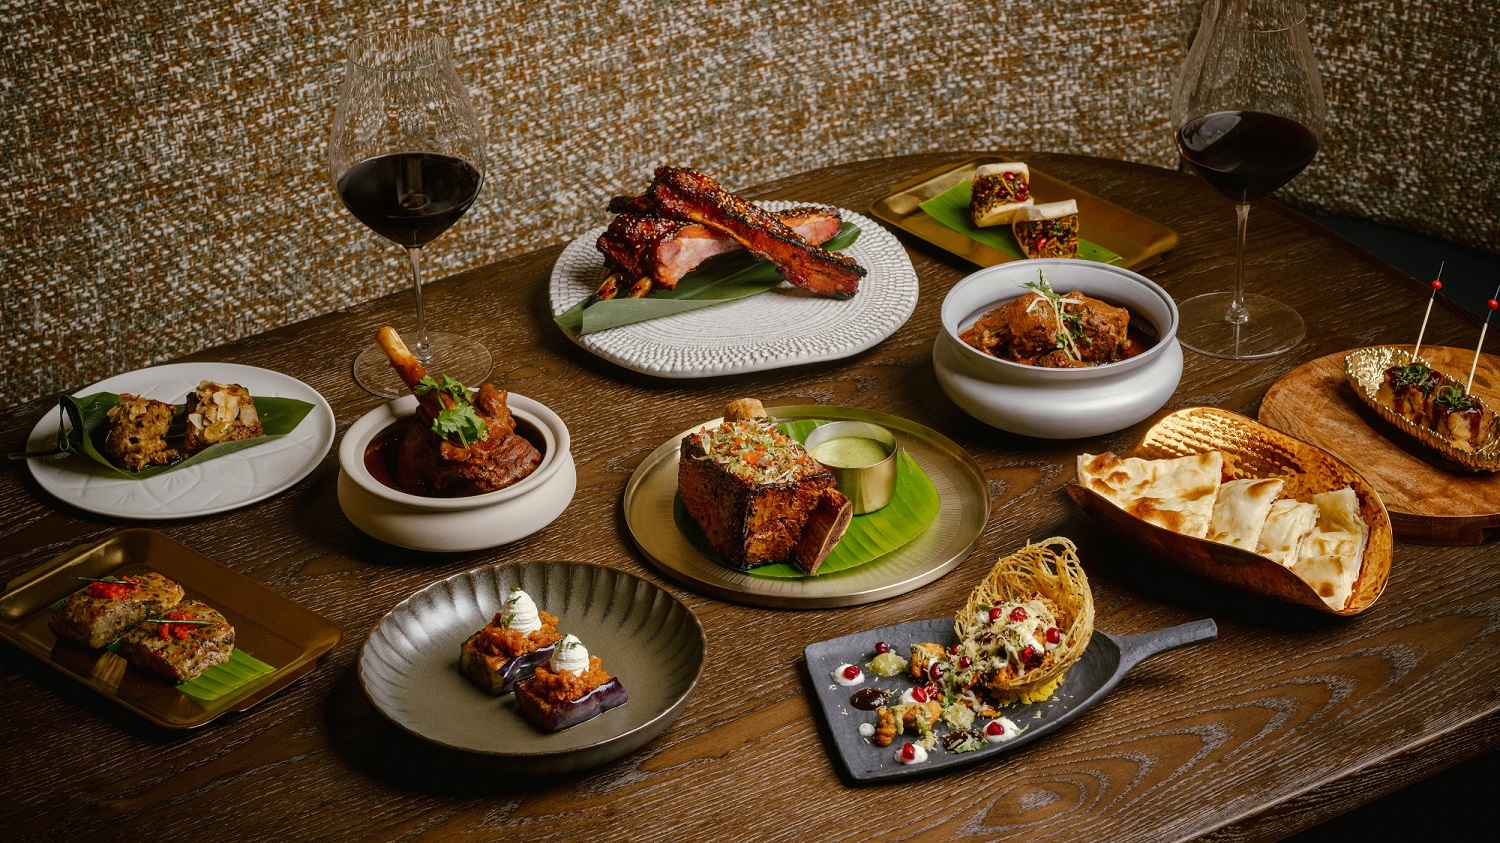 【美食】創意印度餐廳 為傳統菜式注入新意